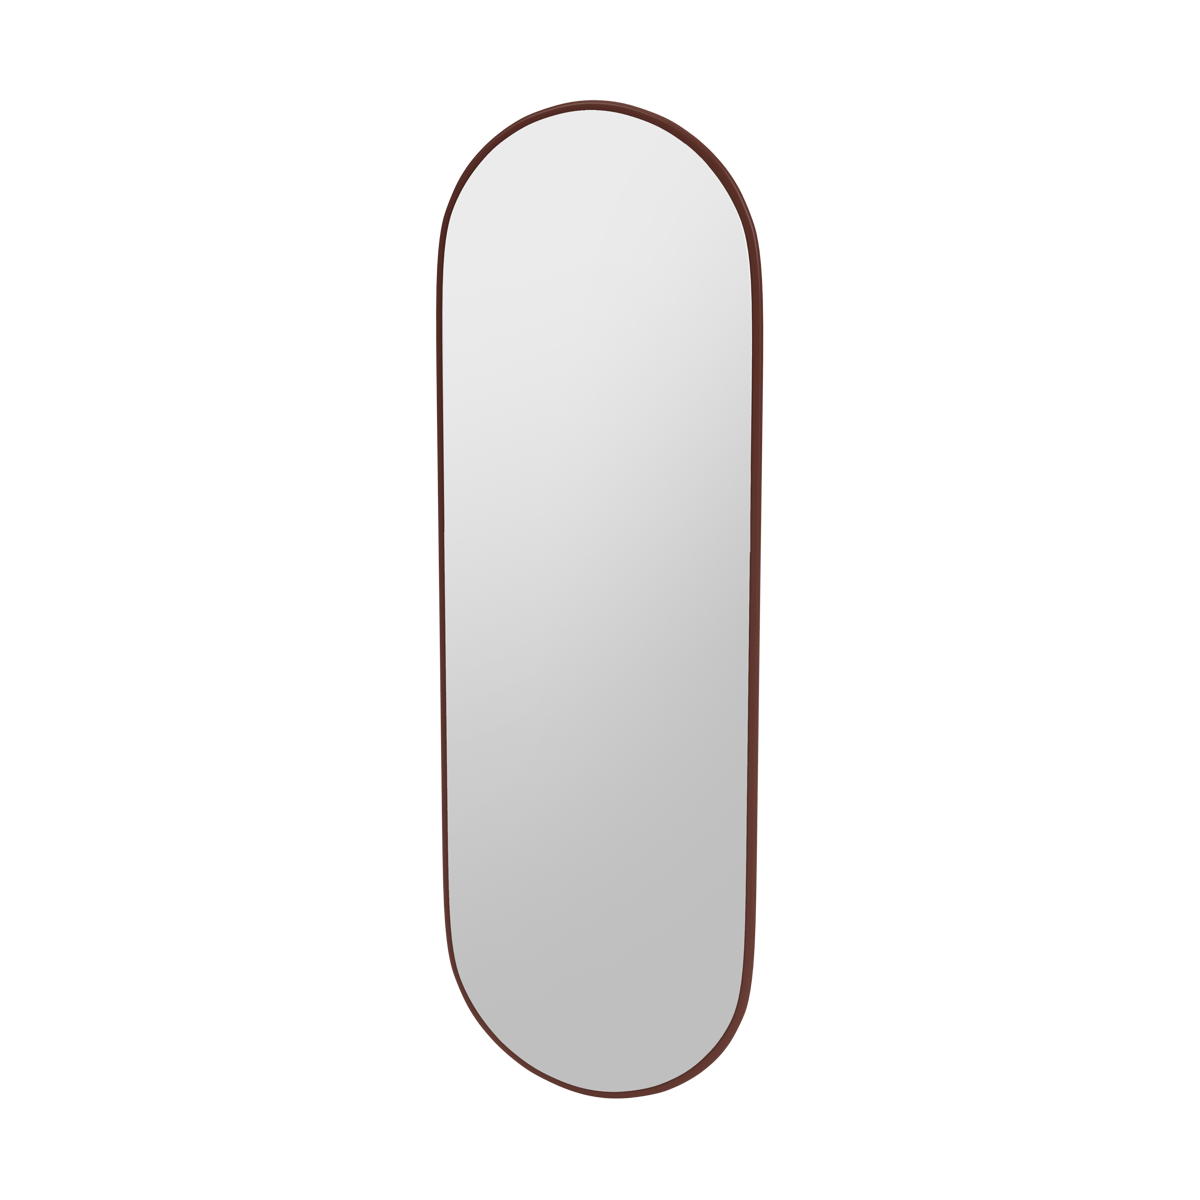 Montana FIGUUR Mirror Spiegel - SP824R Masala